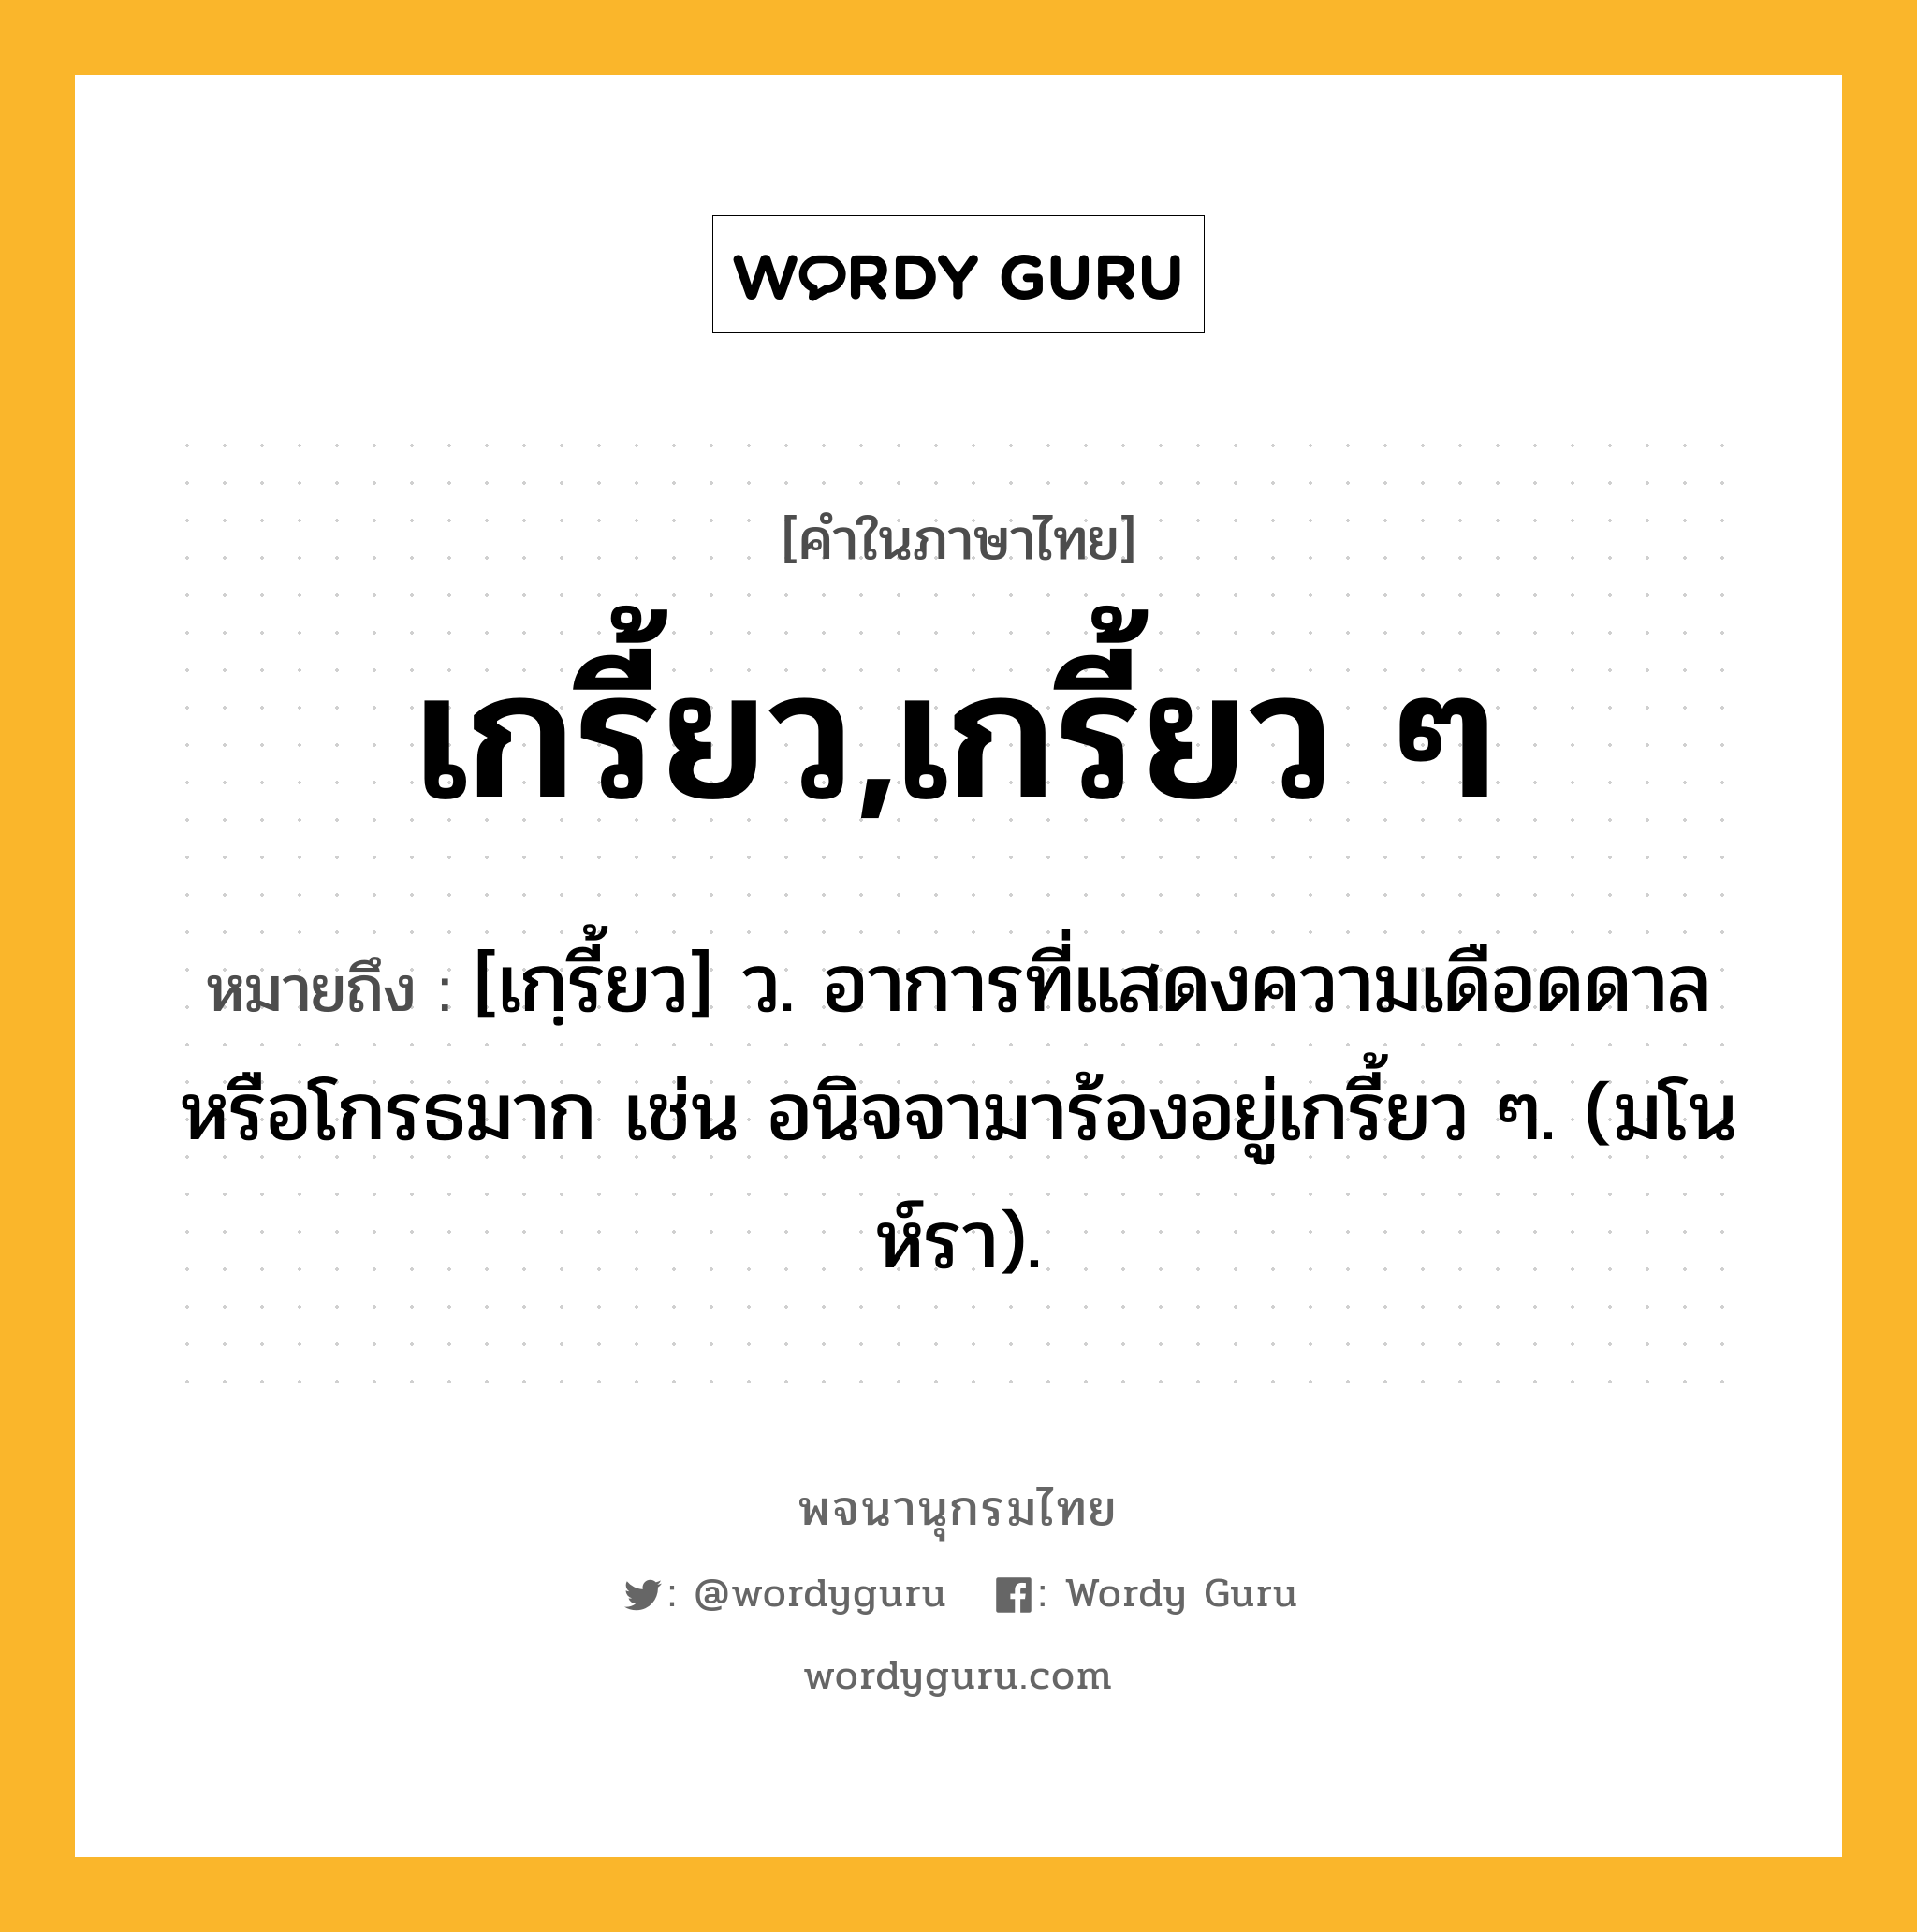 เกรี้ยว,เกรี้ยว ๆ หมายถึงอะไร?, คำในภาษาไทย เกรี้ยว,เกรี้ยว ๆ หมายถึง [เกฺรี้ยว] ว. อาการที่แสดงความเดือดดาลหรือโกรธมาก เช่น อนิจจามาร้องอยู่เกรี้ยว ๆ. (มโนห์รา).